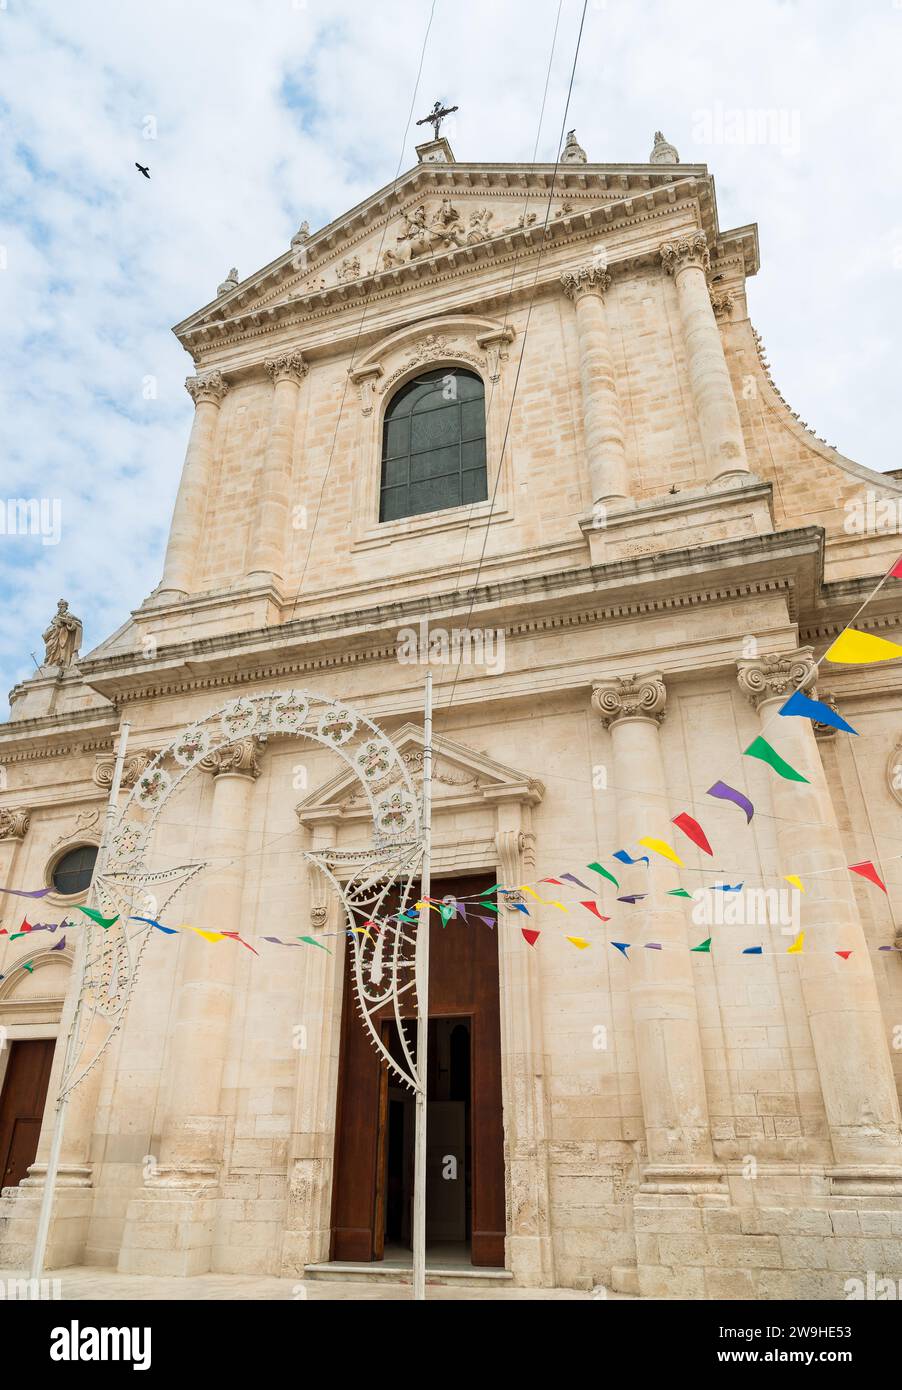 Facade of the mother church of Saint Giorgio Martire in Locorotondo, province of Bari, Puglia, Italy. Stock Photo